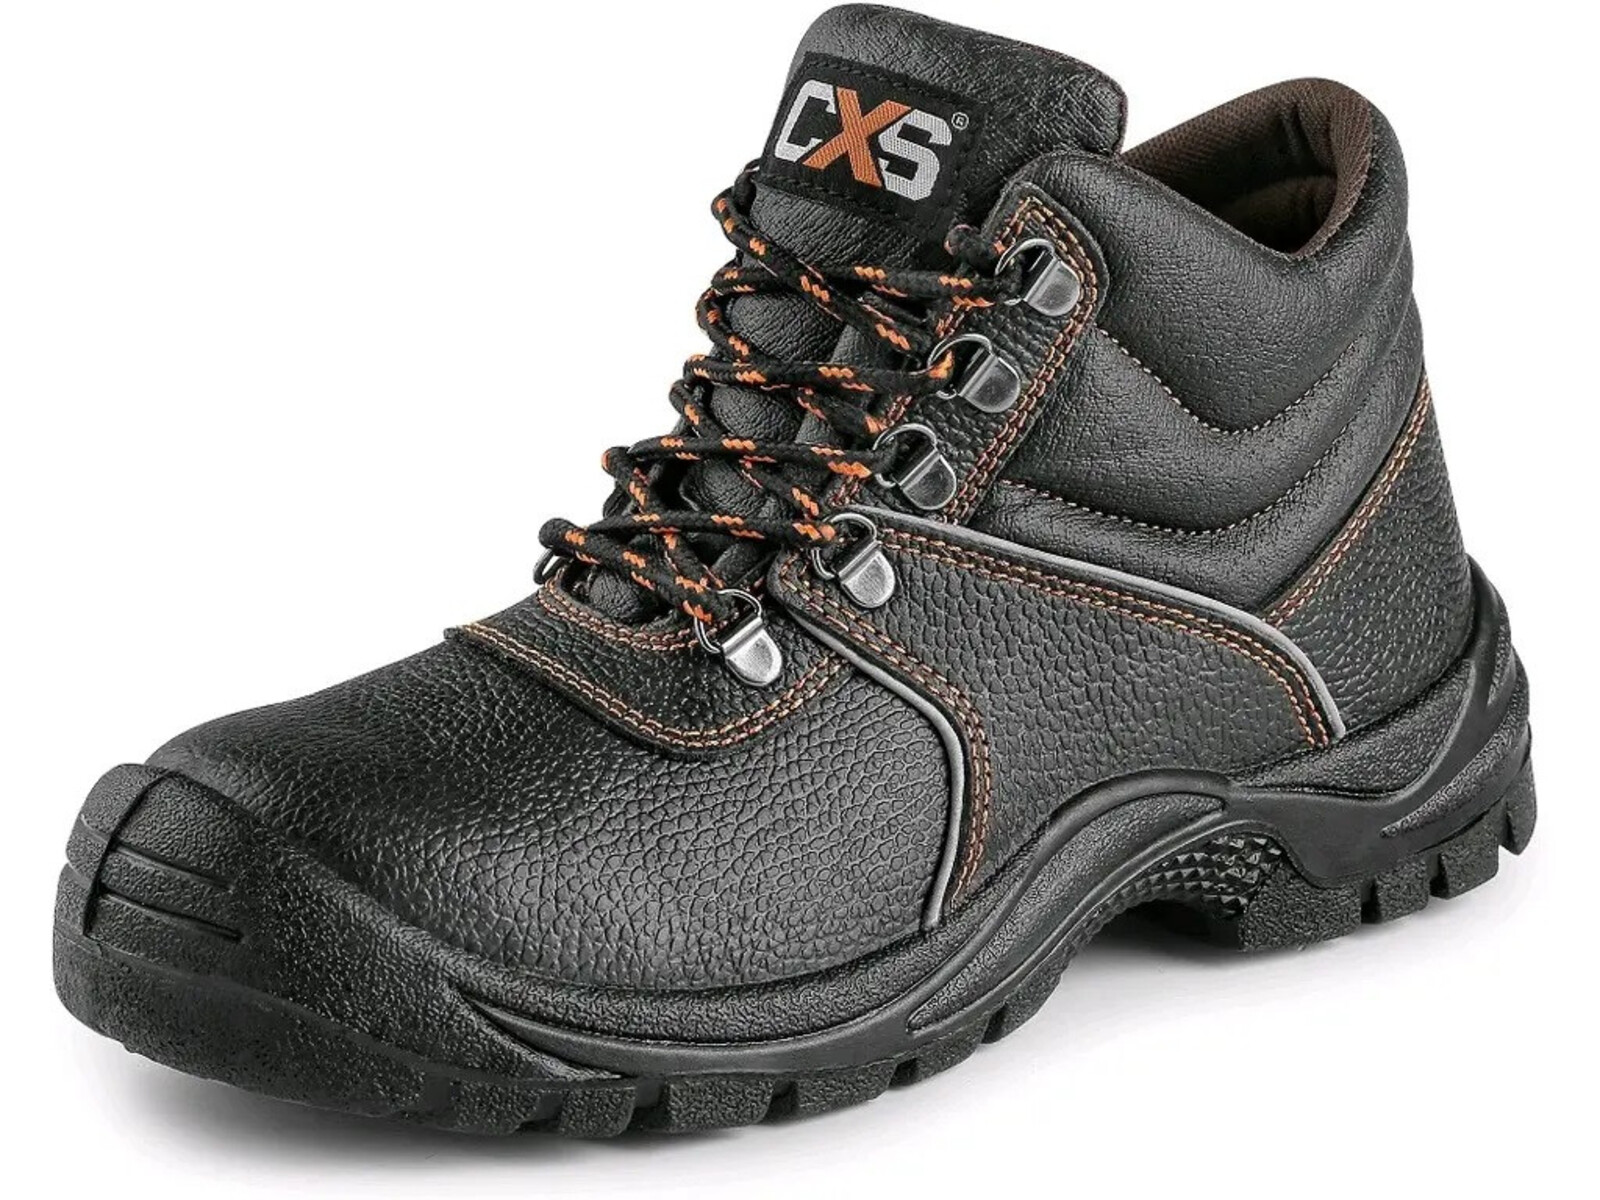 Bezpečnostná členková obuv CXS Stone Marble S3 SRC - veľkosť: 38, farba: čierna/oranžová